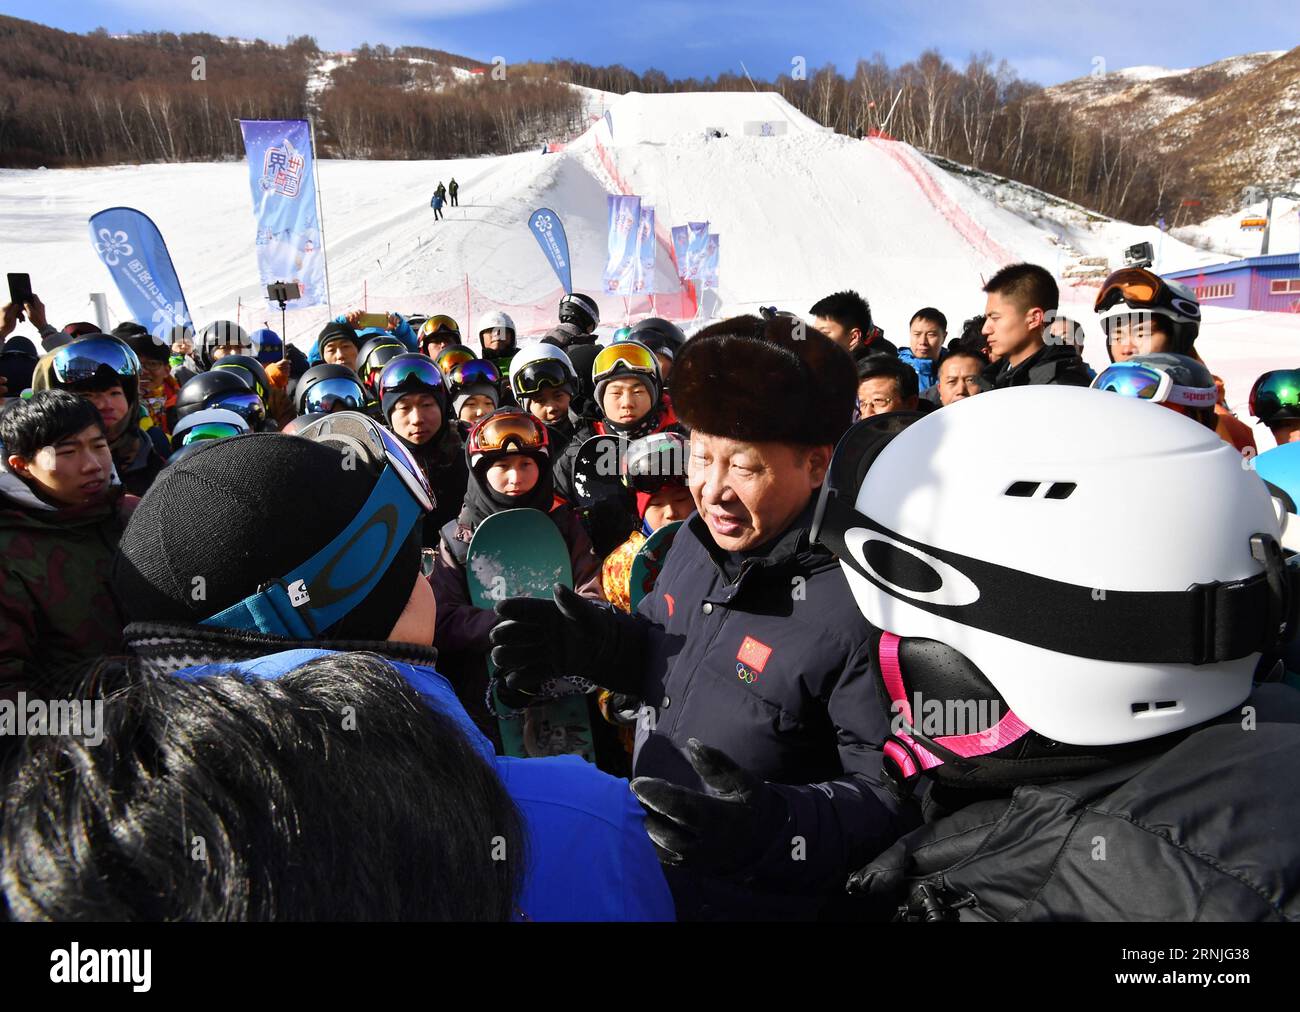 (170123) -- ZHANGJIAKOU, 23. Januar 2017 -- der chinesische Präsident Xi Jinping spricht mit den Athleten der nationalen Skiteams und den Skiliebhabern im Skigebiet Genting, während er die Vorbereitungsarbeiten für die Olympischen Winterspiele 2022 in Peking in der Stadt Zhangjiakou, Provinz Hebei, im Norden Chinas, am 23. Januar 2017 inspiziert. ) (lfj) CHINA-XI JINPING-2022 WINTER OLYMPICS-INSPECTION (CN) LixTao PUBLICATIONxNOTxINxCHN Zhangjiakou 23. Januar 2017 der chinesische Präsident Xi Jinping spricht mit Athleten DES Nationalen Skiteams und Skiliebhabern IM Skigebiet Genting, während er die Vorbereitungsarbeiten für die Olympischen Winterspiele 2022 in Peking in Zhangjiakou inspiziert Stockfoto